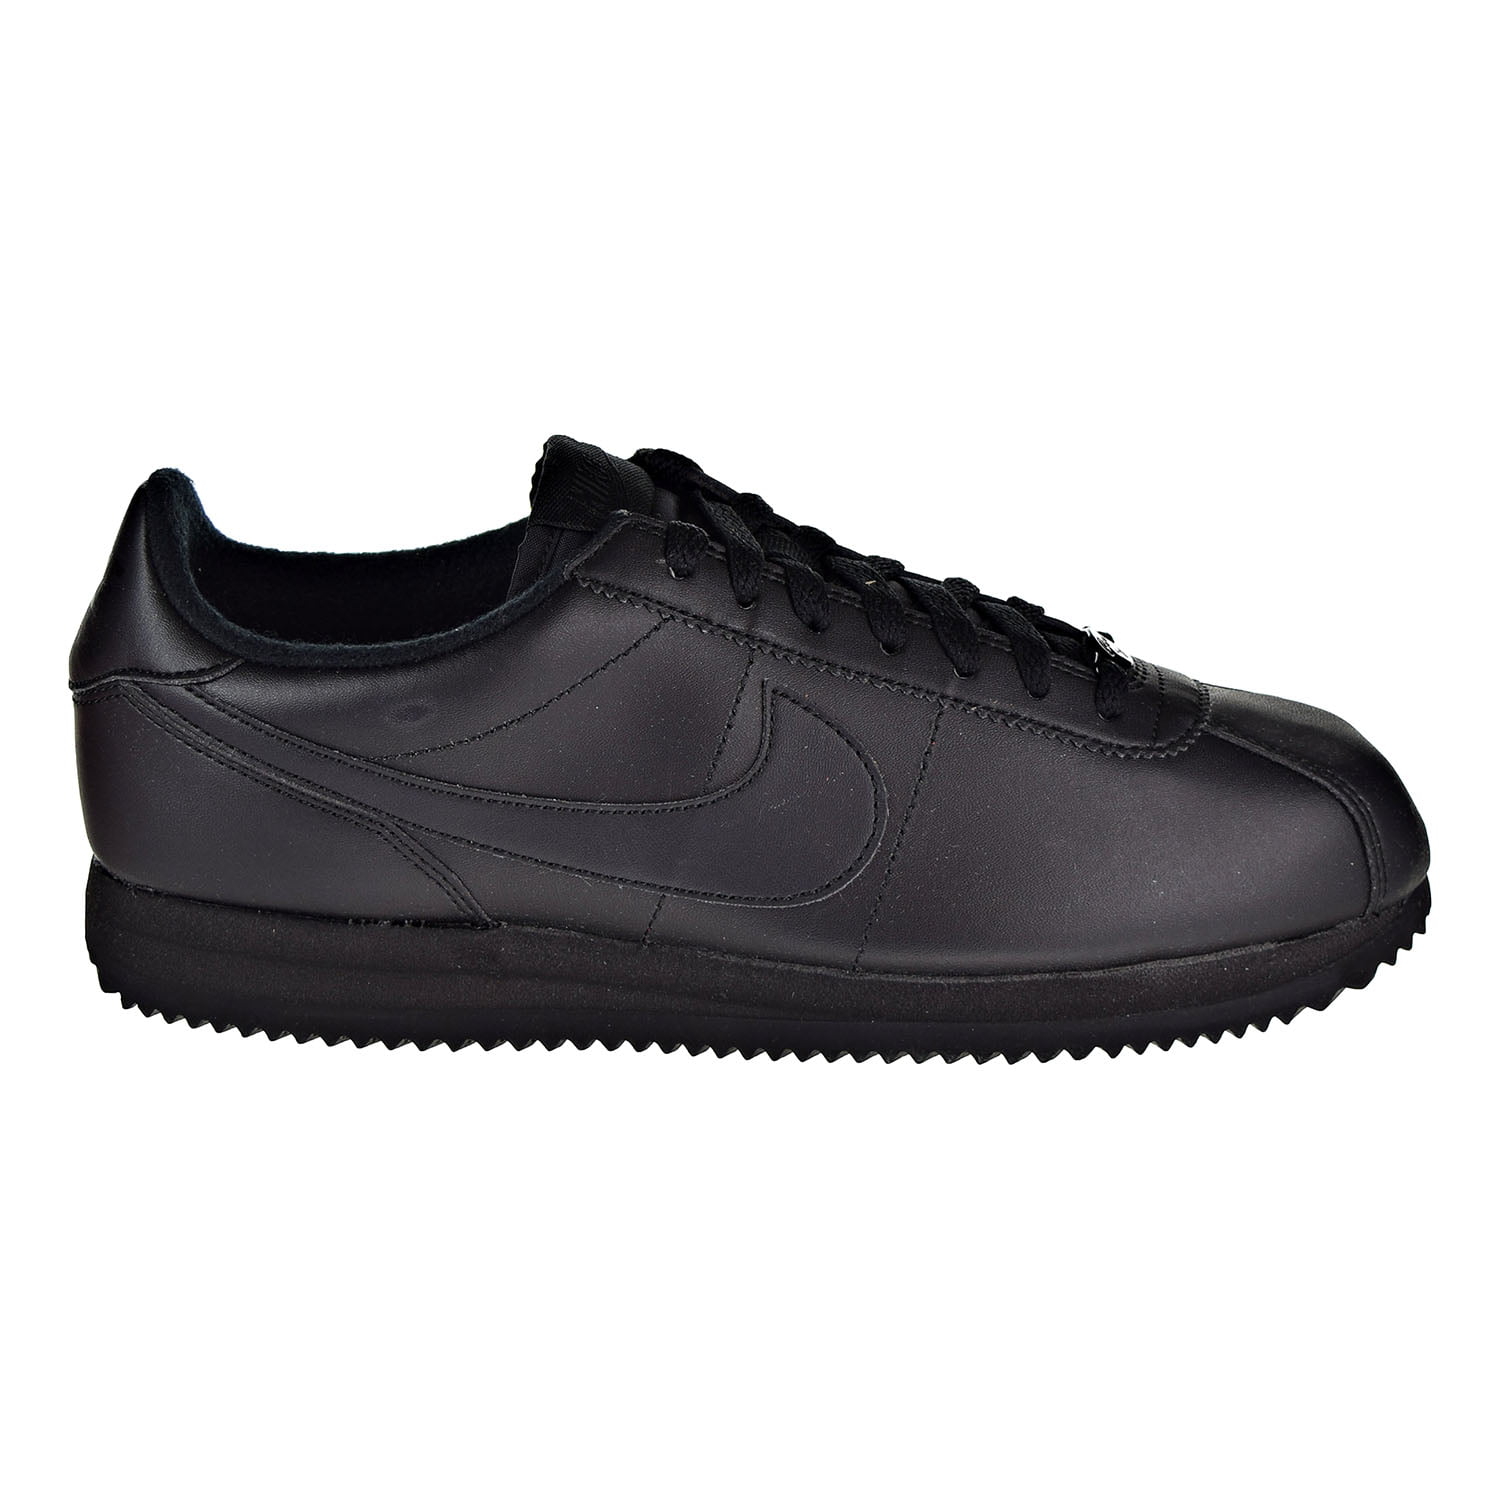 Cortez Leather Men's Shoes Black/Black/Anthracite 819719-001 - Walmart.com